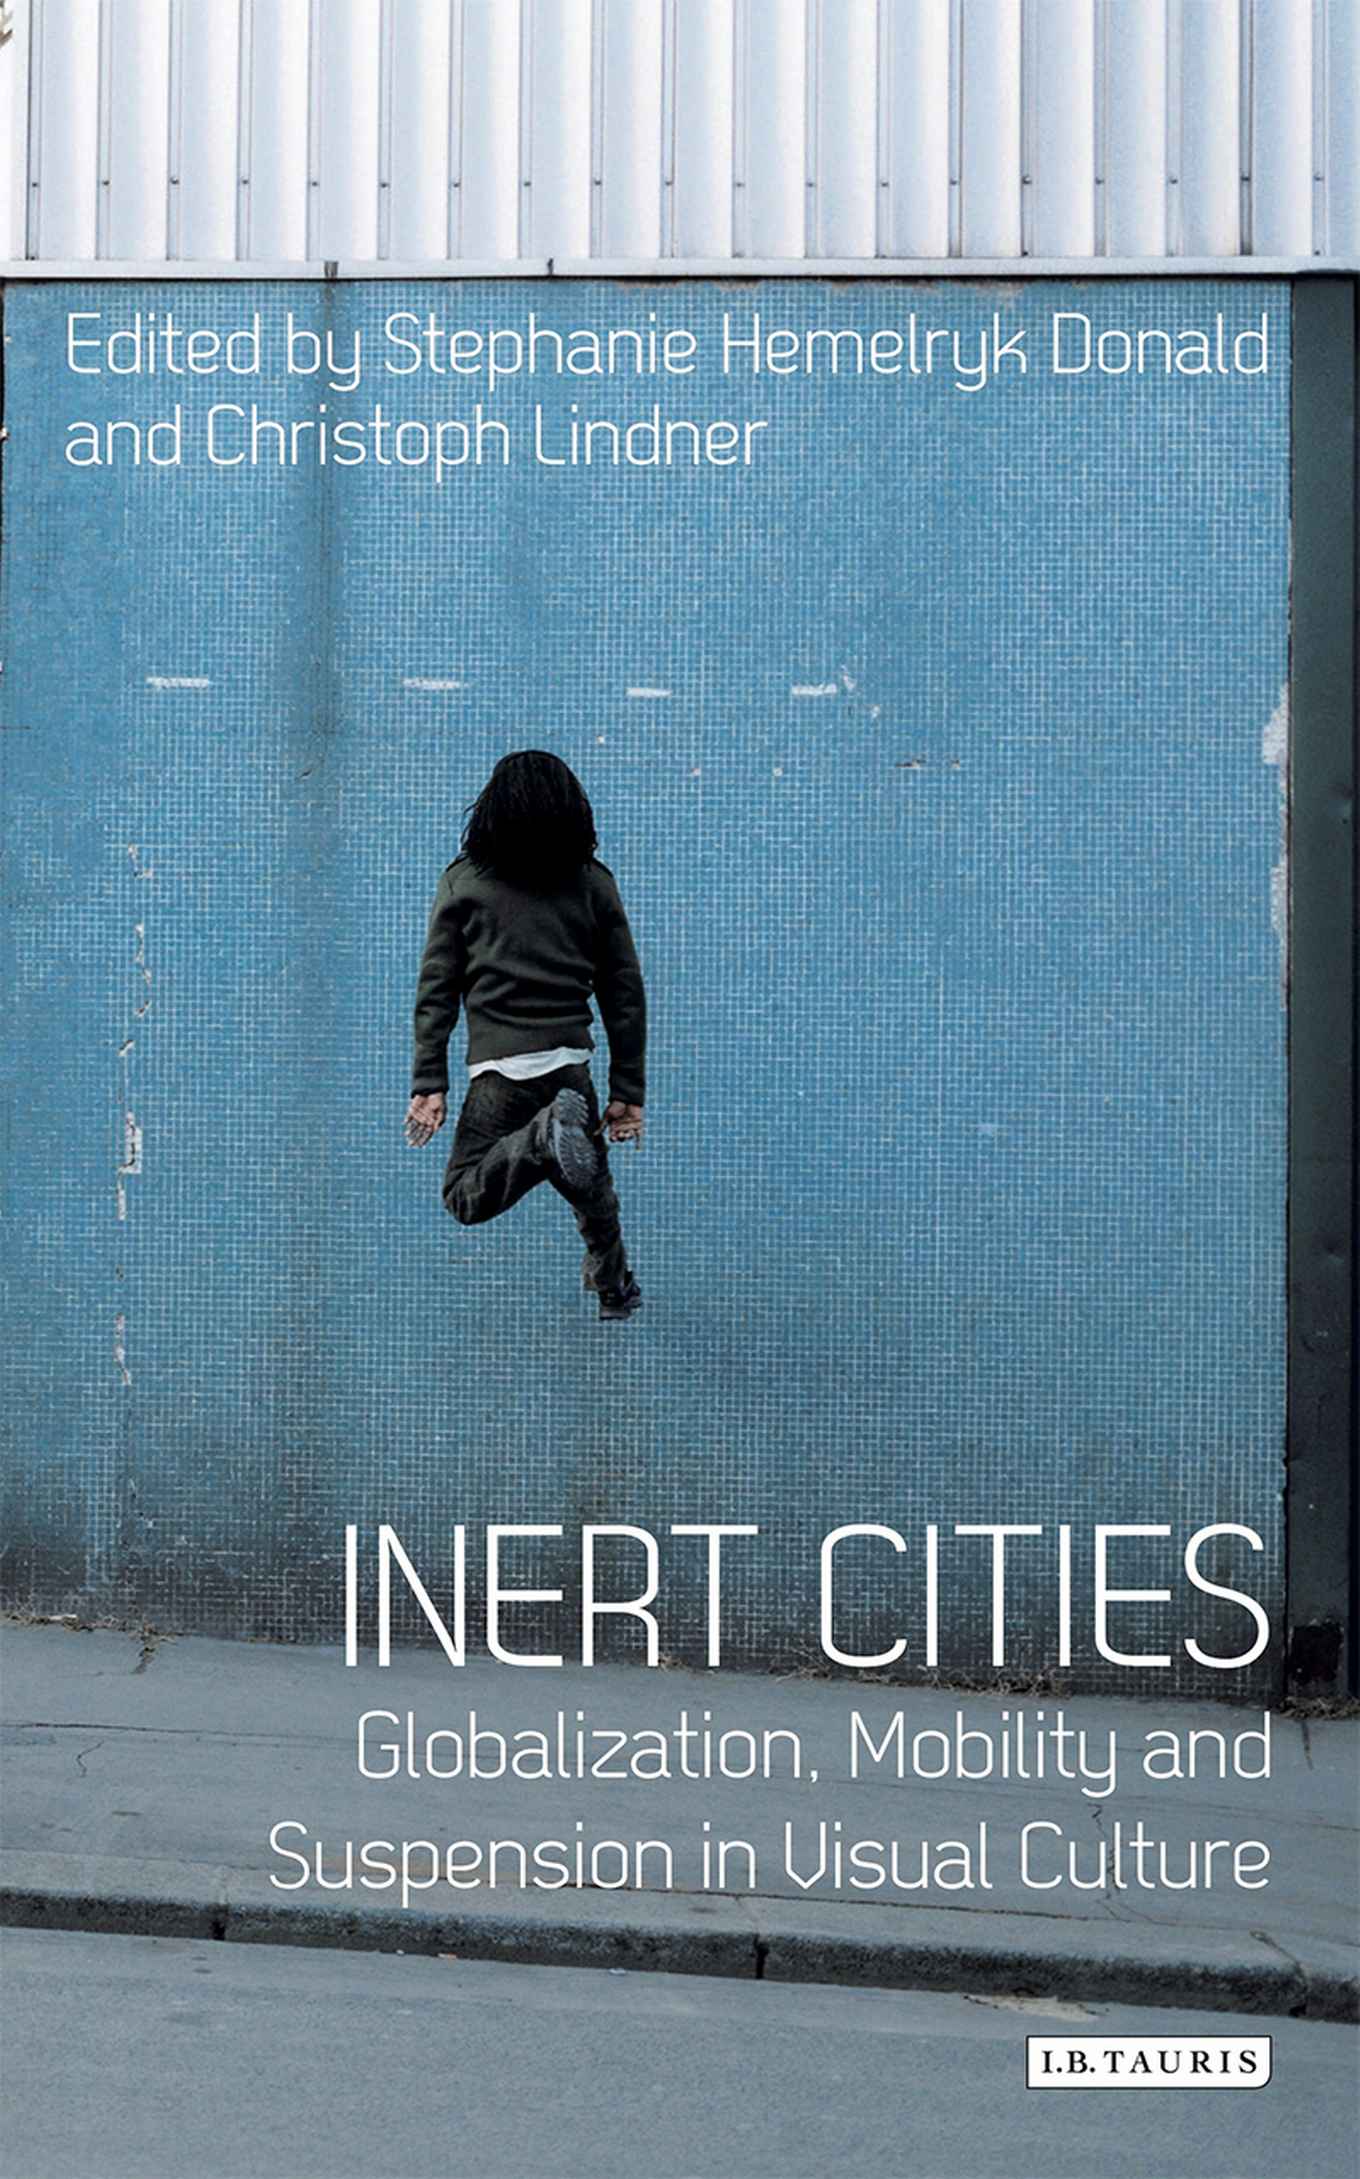 Inert Cities